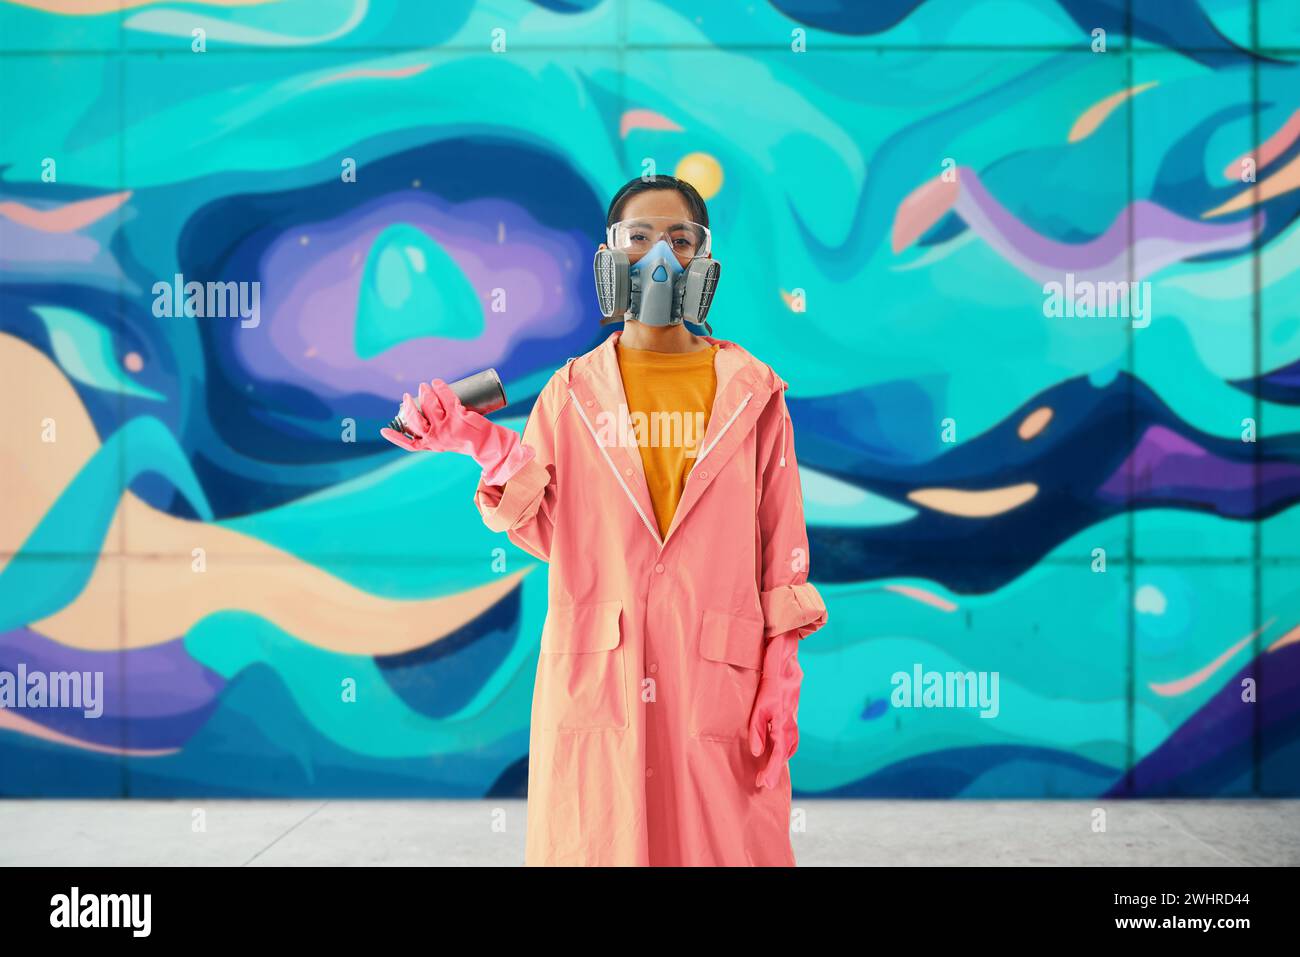 Graffiti-Künstlerin in Atemschutzmaske, die neben der Wand steht, mit ihren Gemälden, die in die Kamera schauen Stockfoto